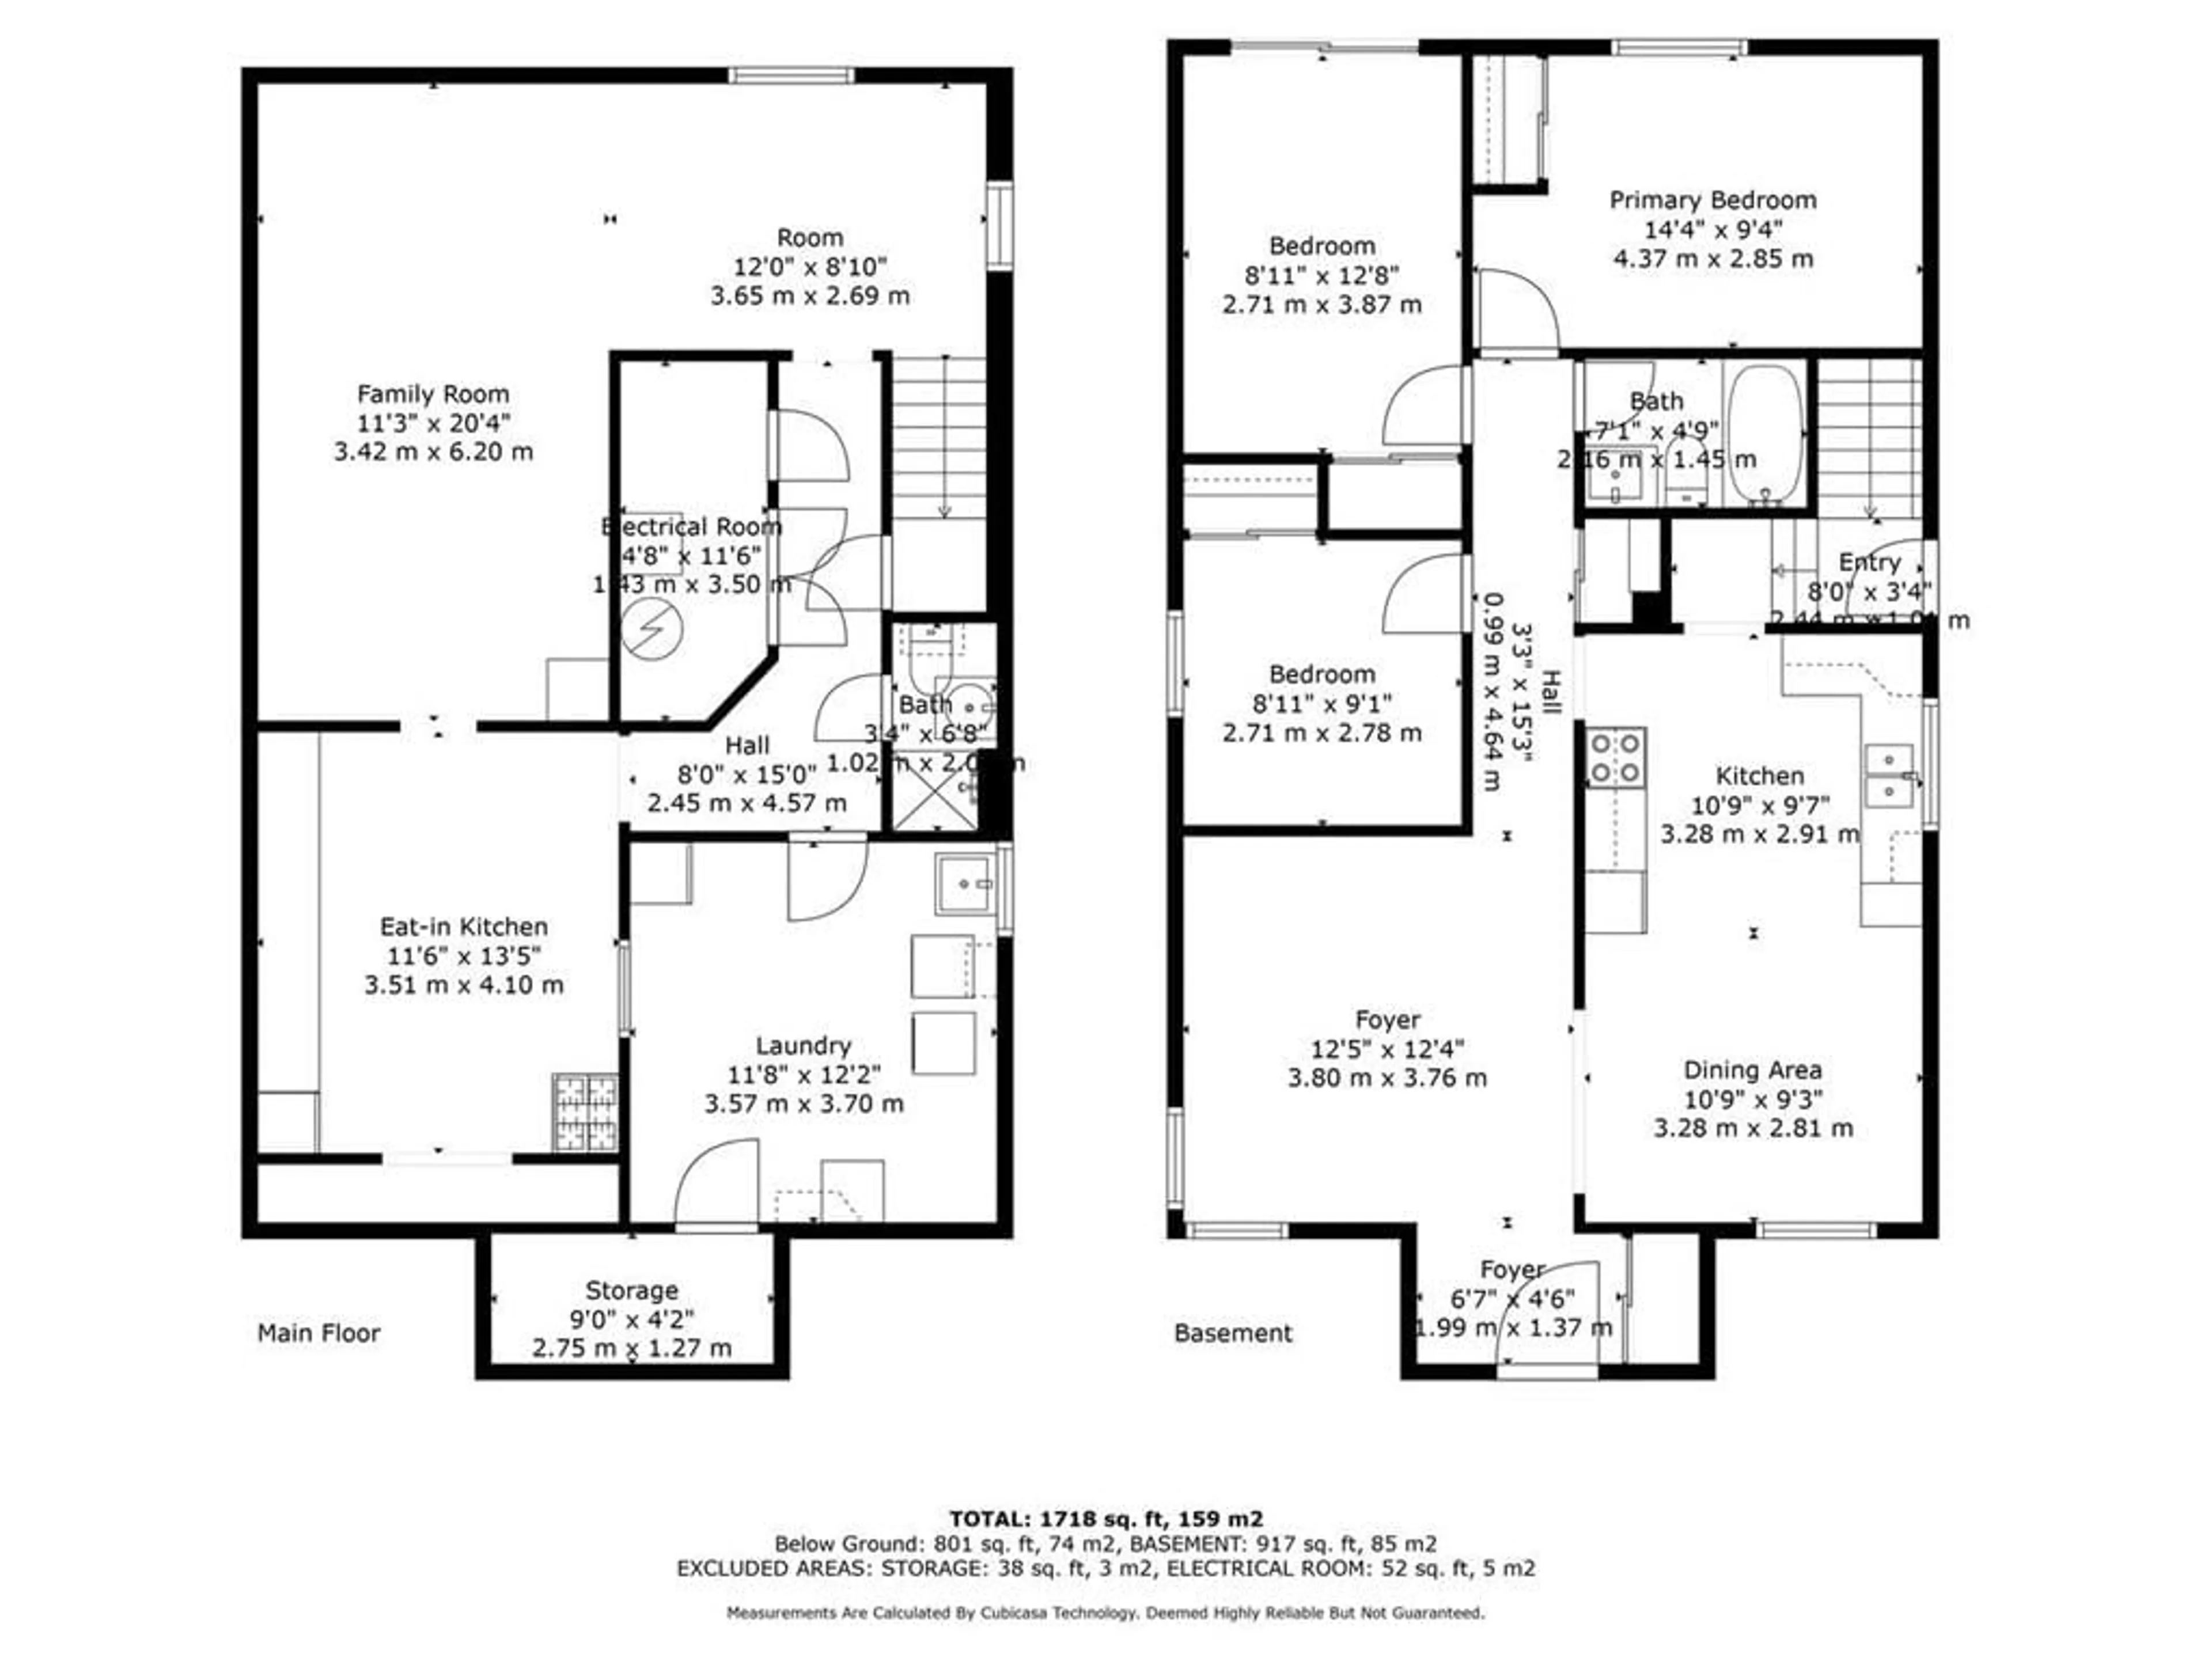 Floor plan for 1141 Sprucedale Rd, Woodstock Ontario N4S 5A1